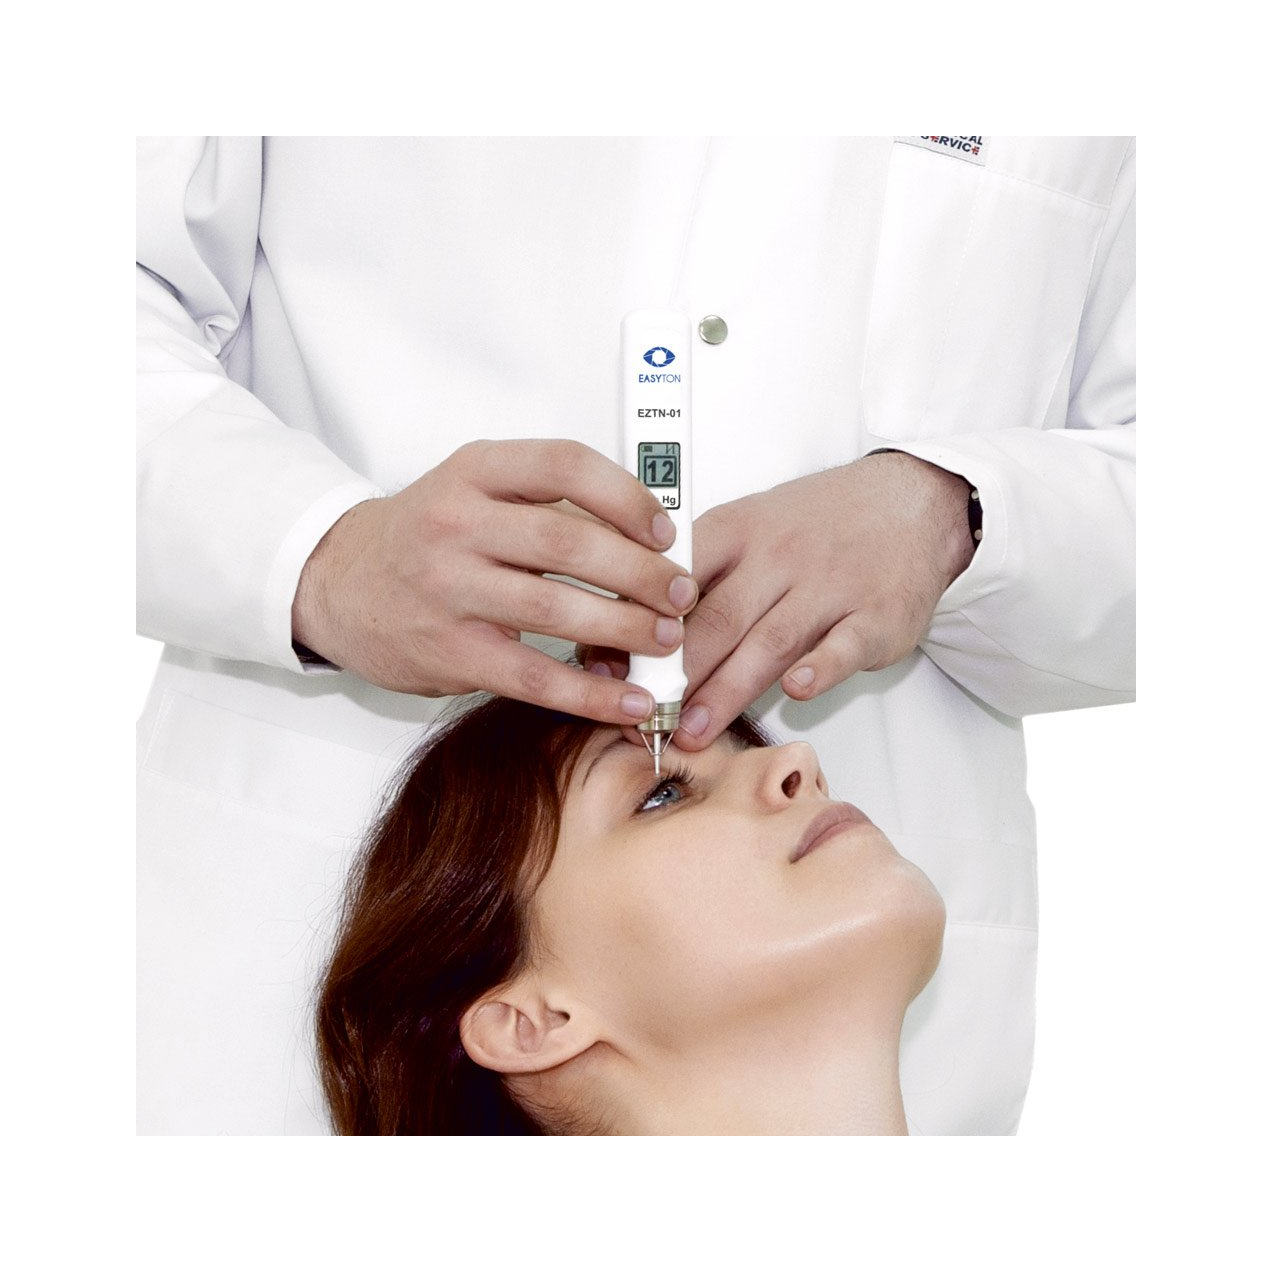 El control de la presión intraocular con el tonómetro digital Easyton es rápido, sencillo y se puede realizar a cualquier tipo de paciente